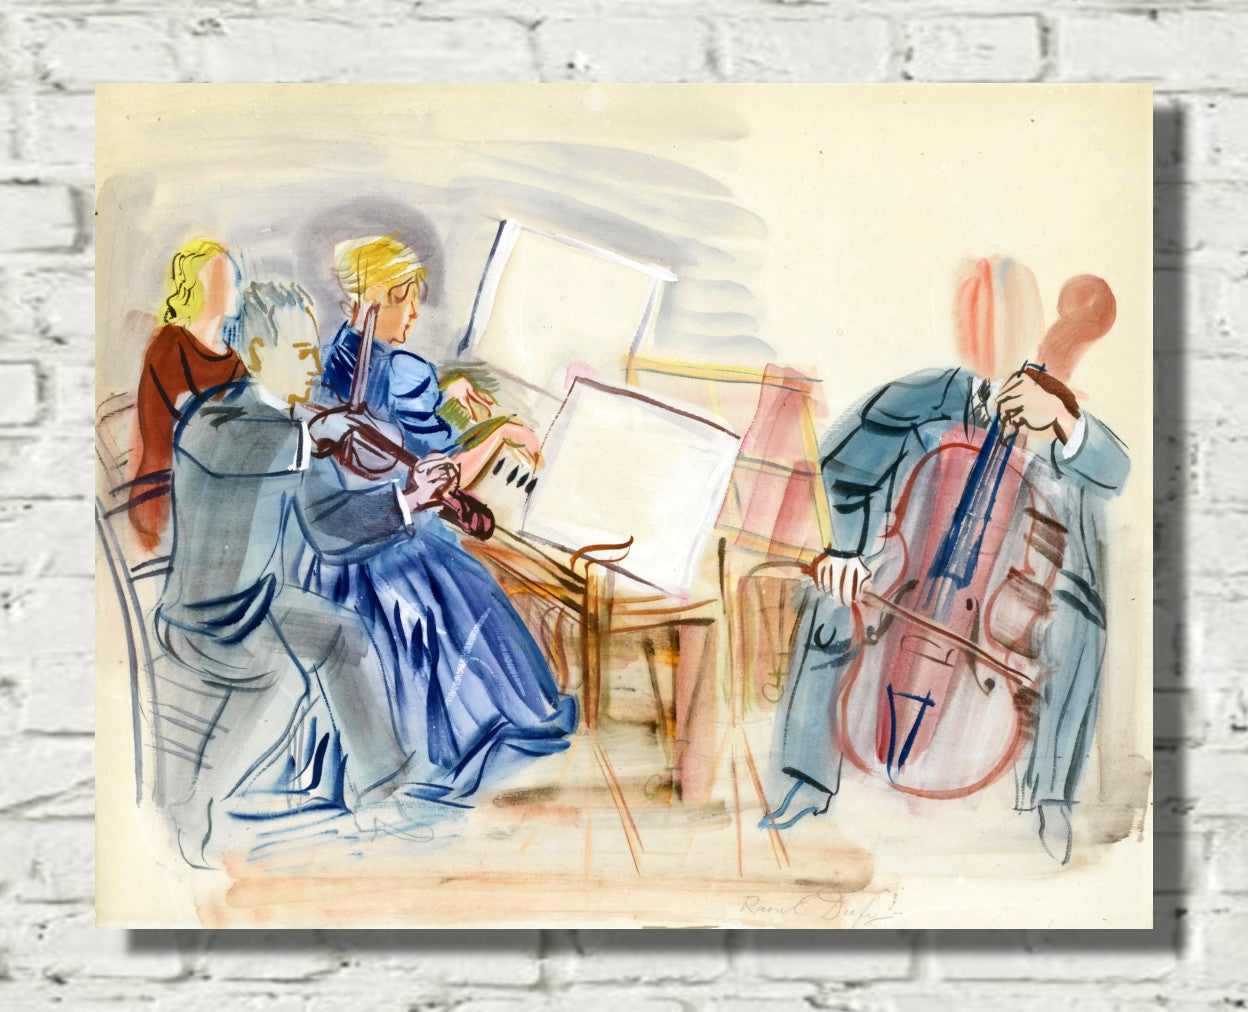 Le Trio Casals by Raoul Dufy